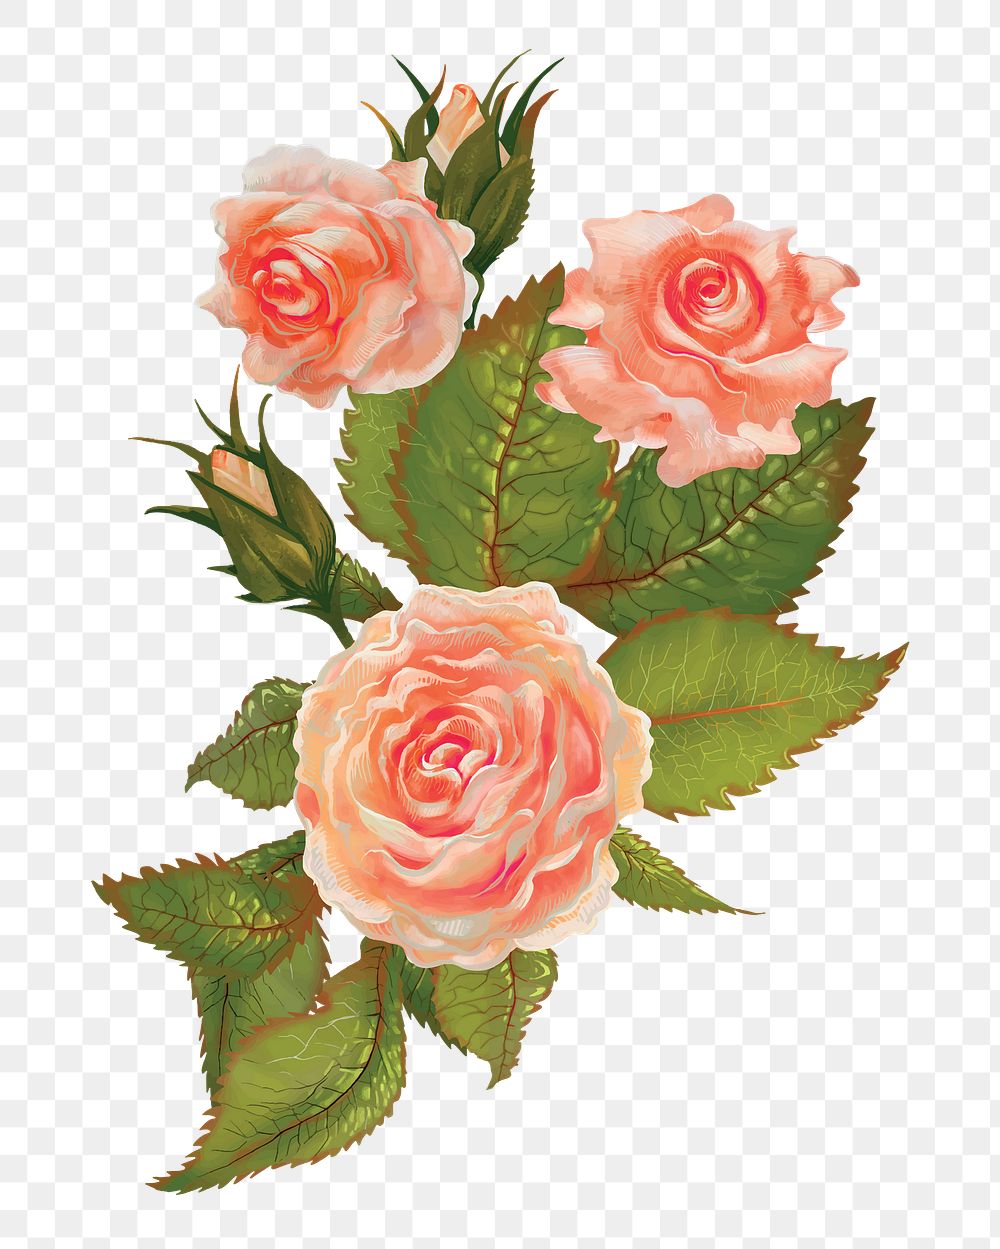 Rose png flower sticker illustration, transparent background